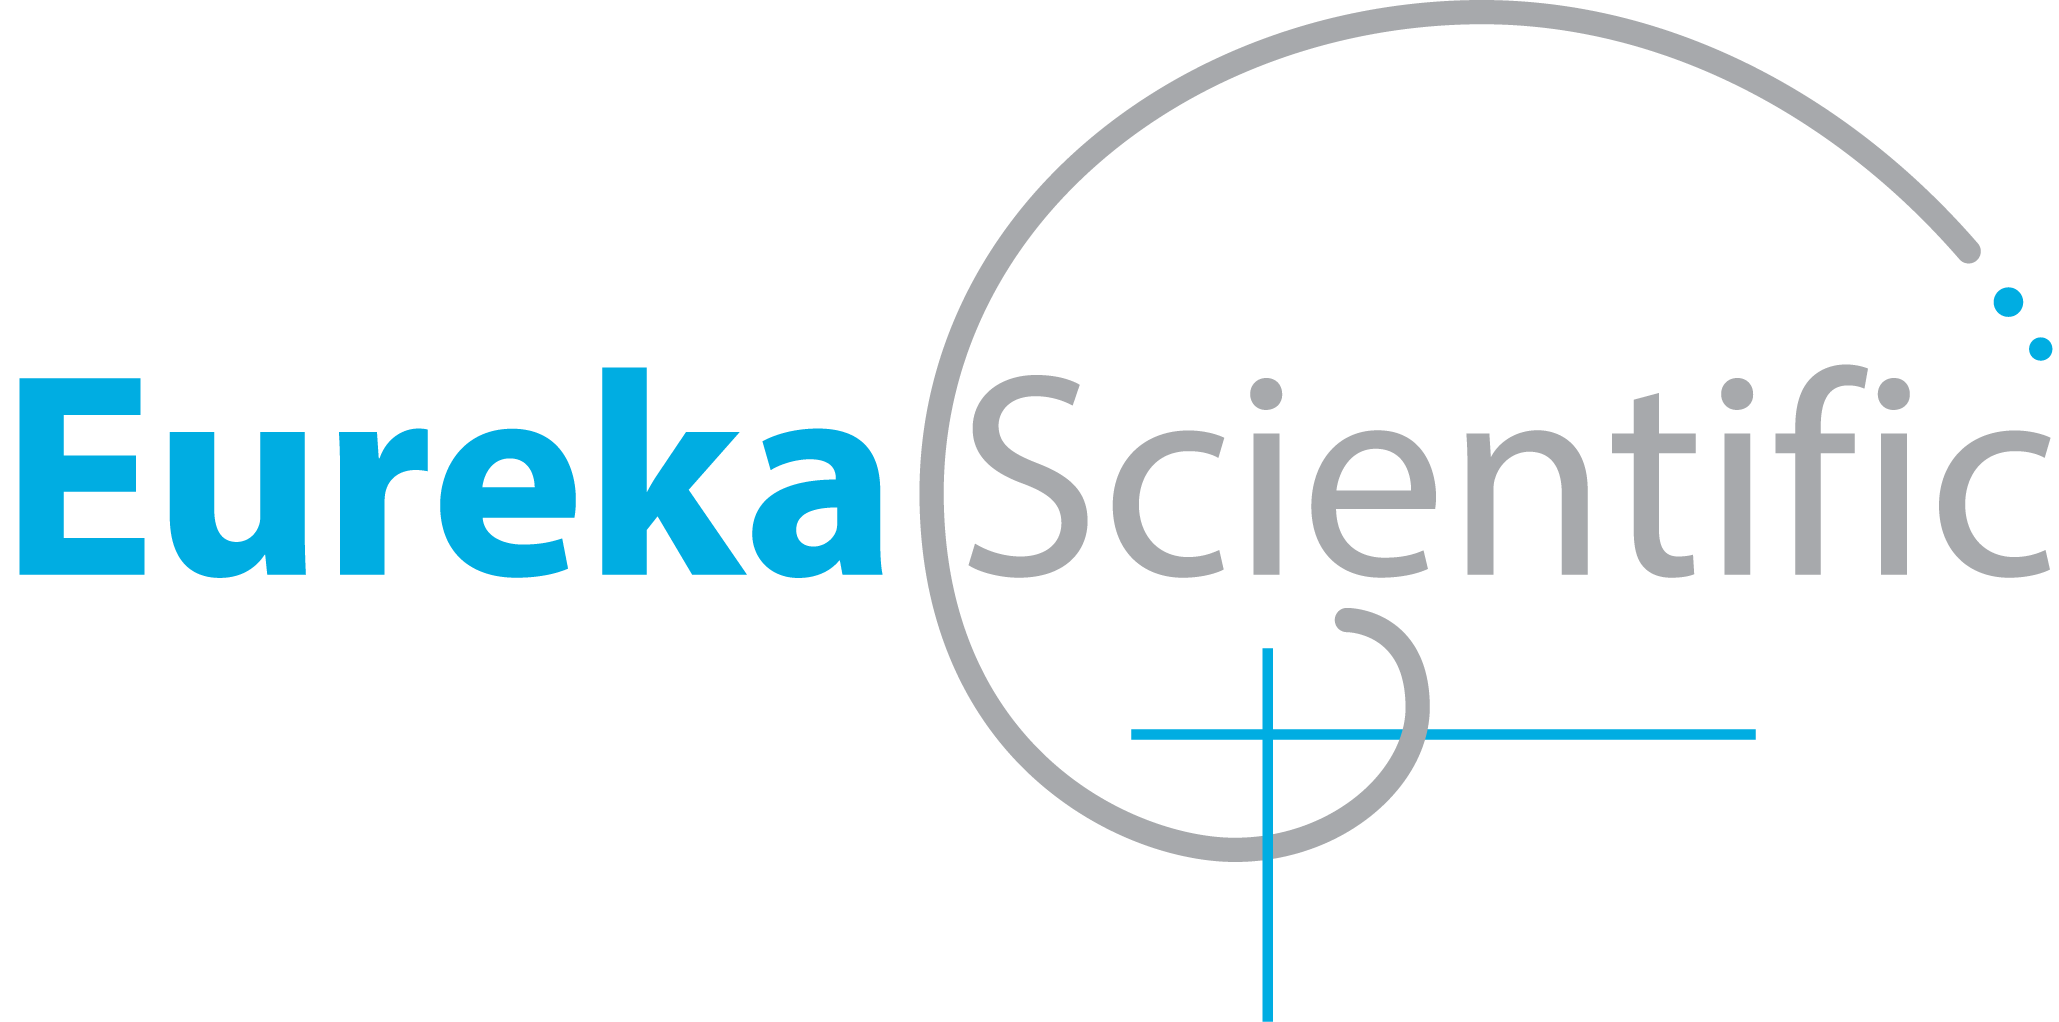 Eureka Scientific, Inc.